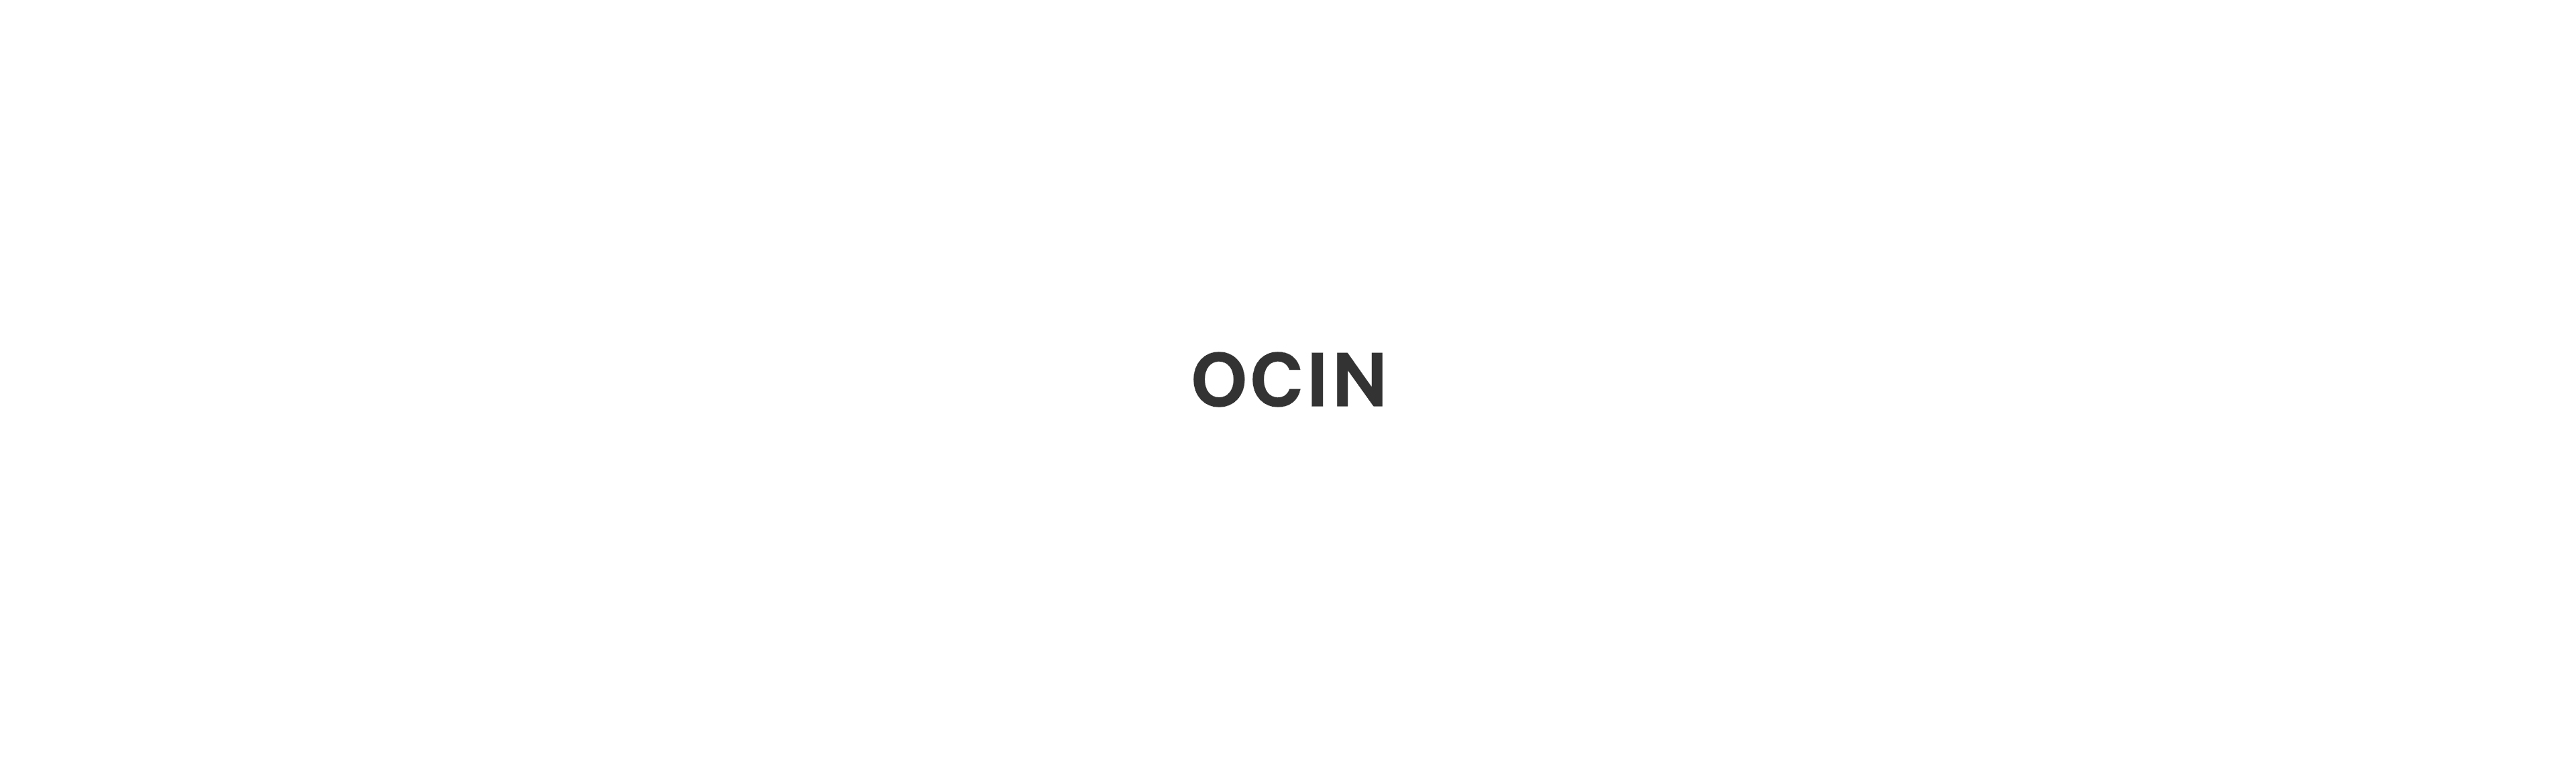 ocin